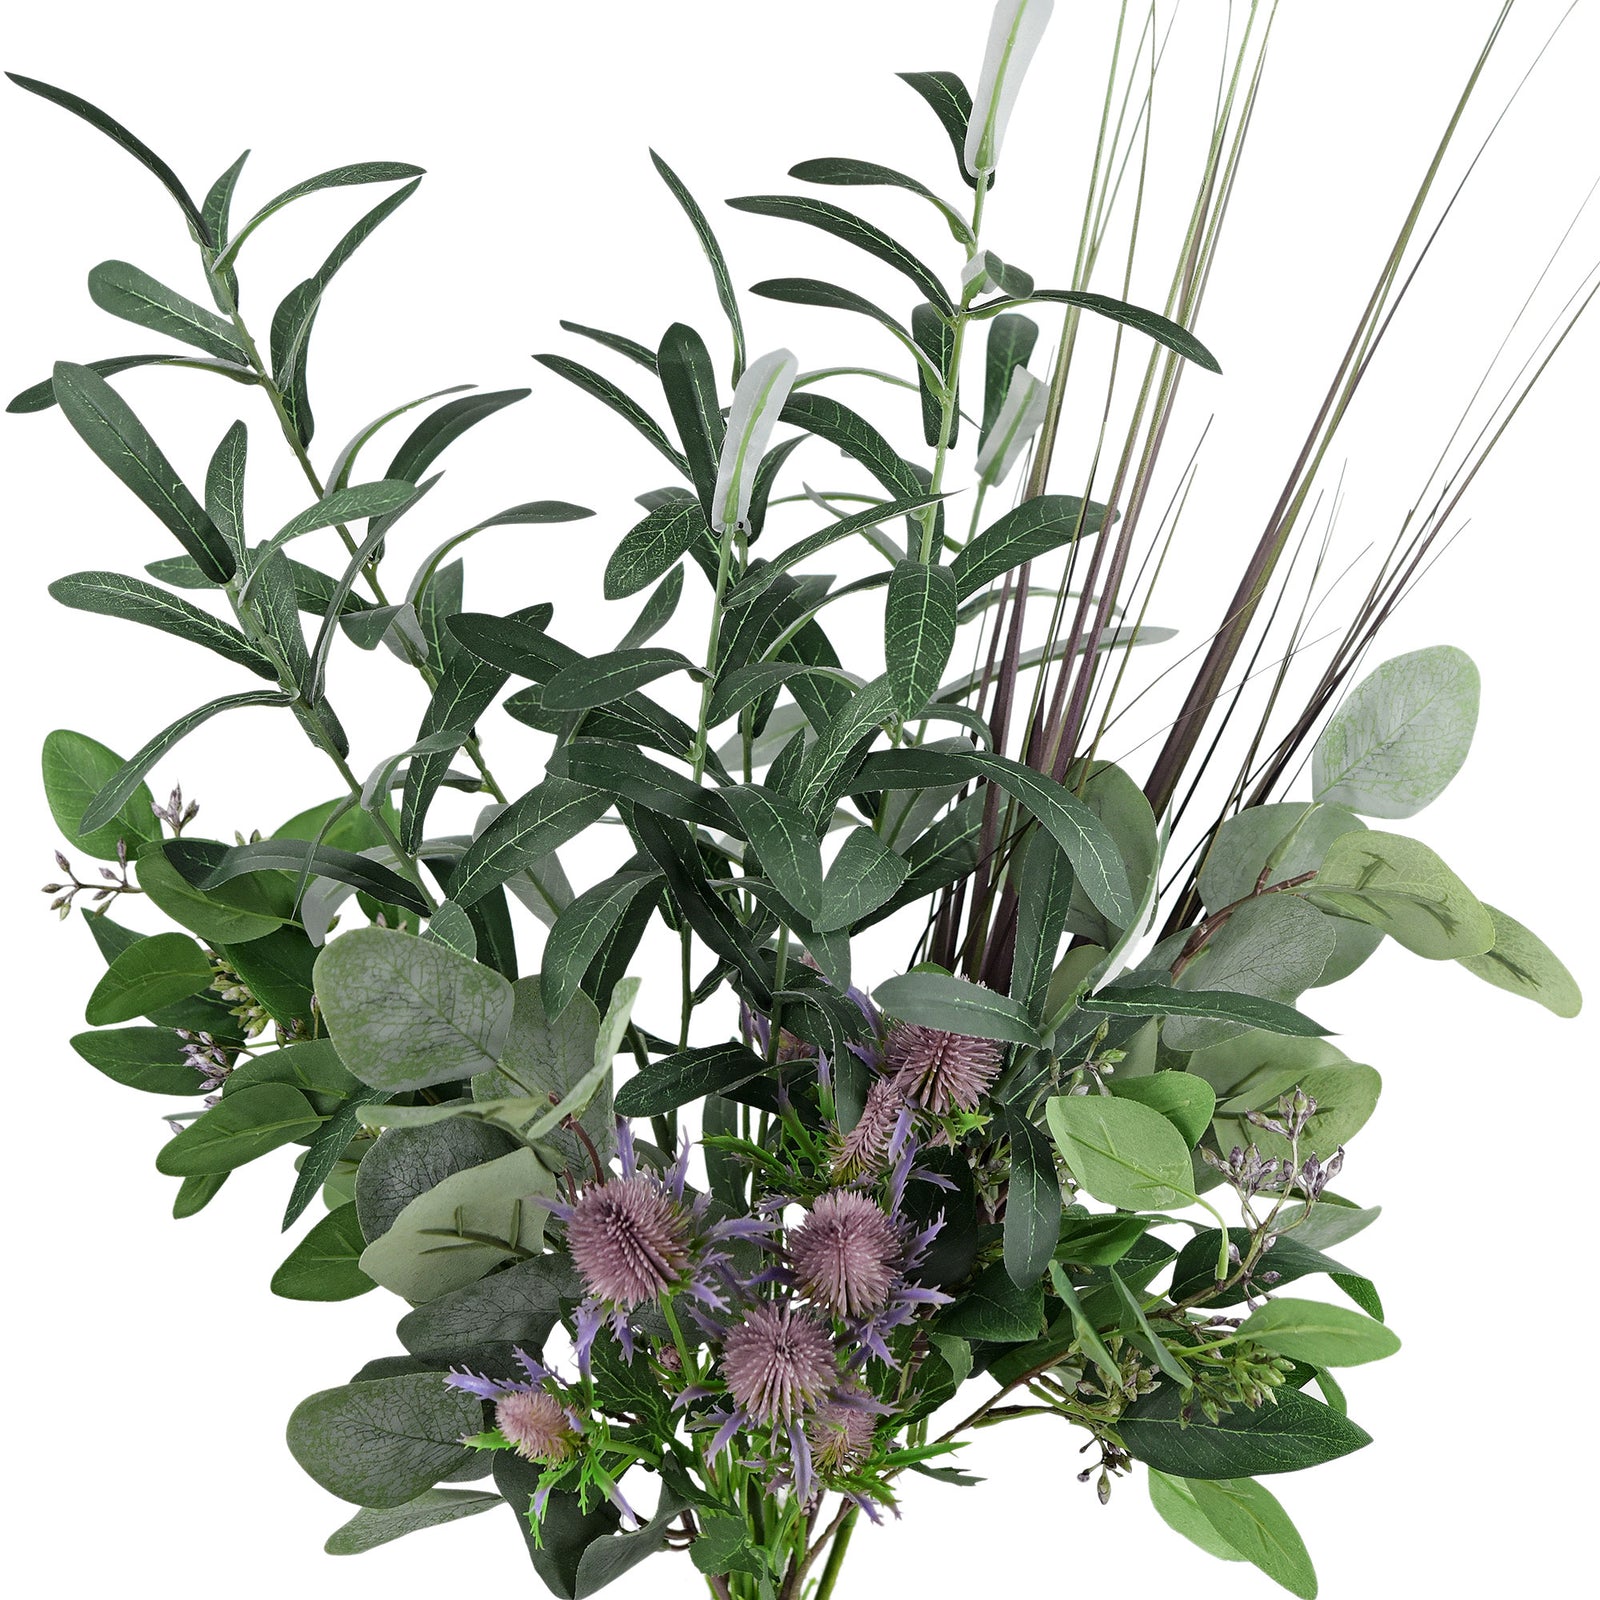 Mediterranean Dreamscape Mix Flower Bouquet Olive,Thistle and Eucalyptus Artificial Flowers Arrangement, Total 8 Stems FiveSeasonStuff Floral